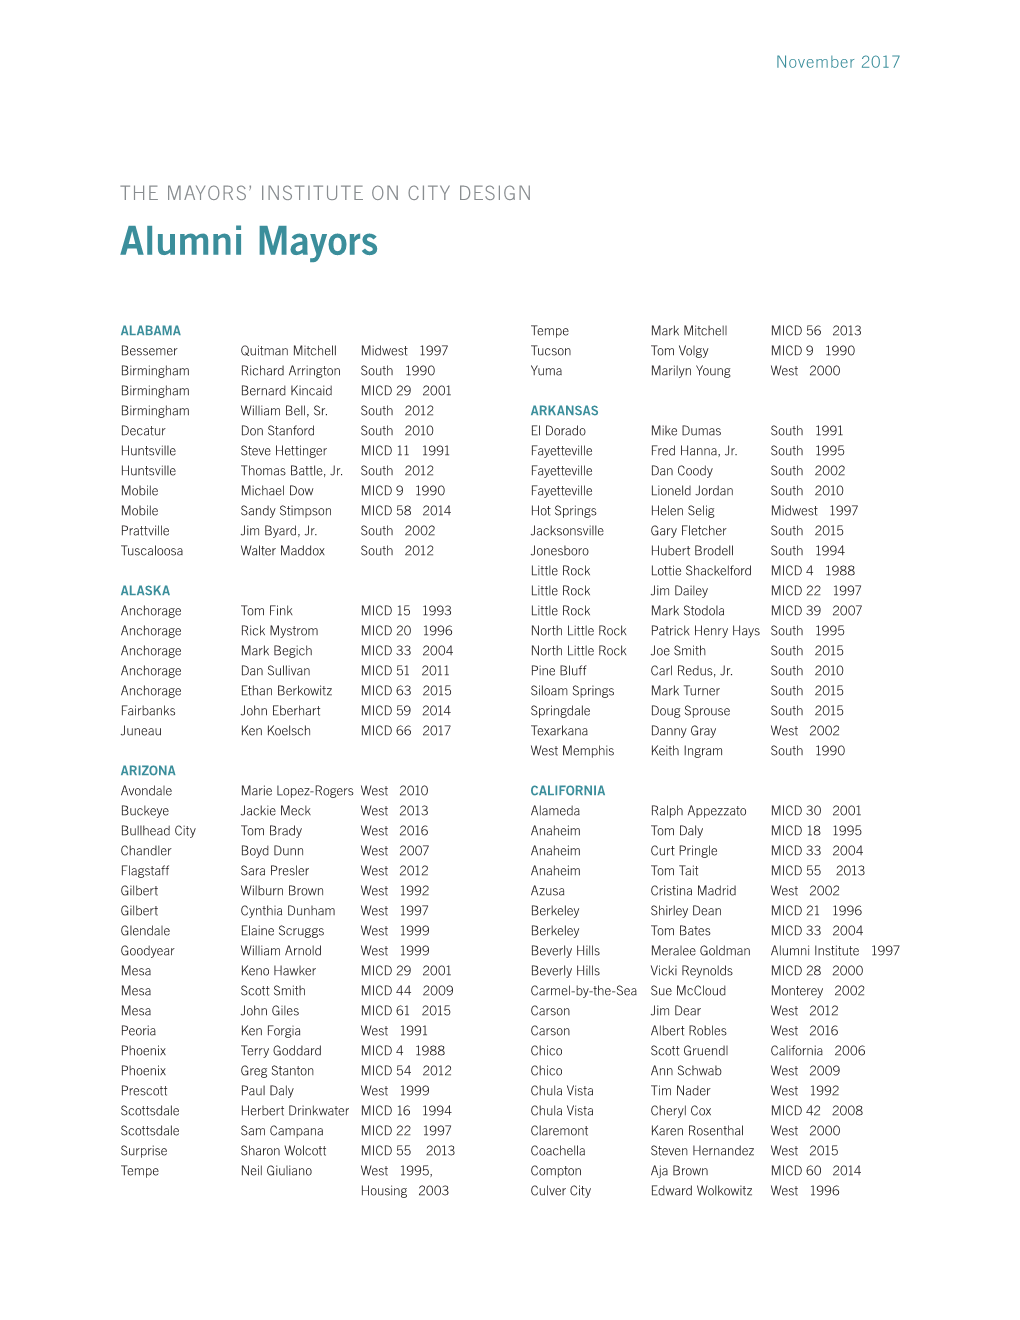 Alumni Mayors